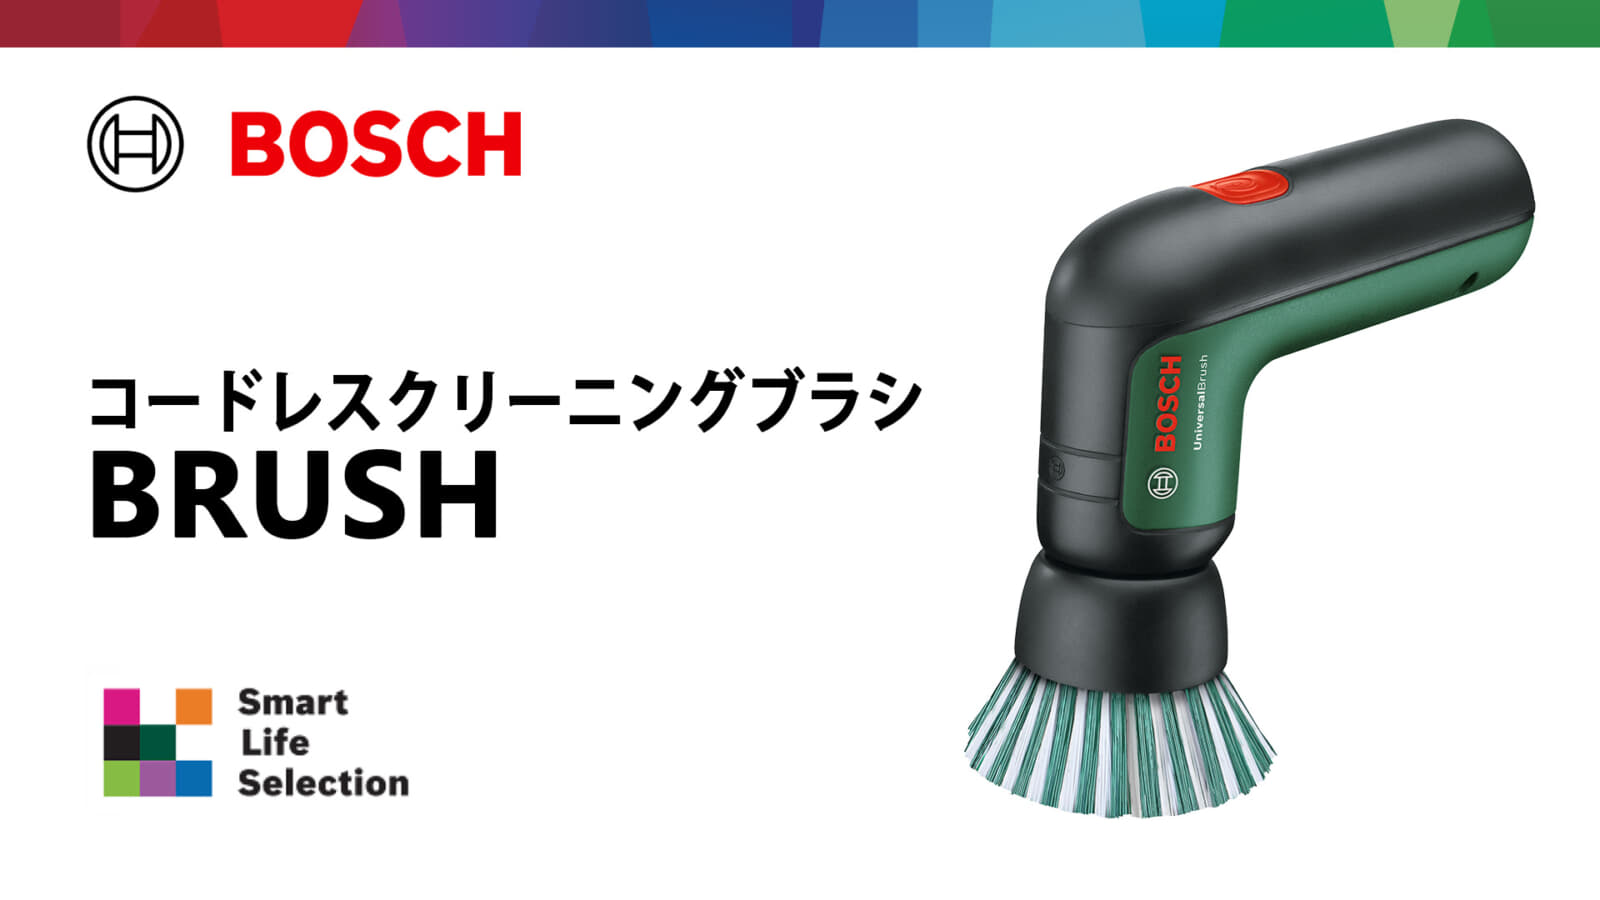 ボッシュ BRUSH コードレスクリーニングブラシを発売、コンパクトなお掃除ブラシ